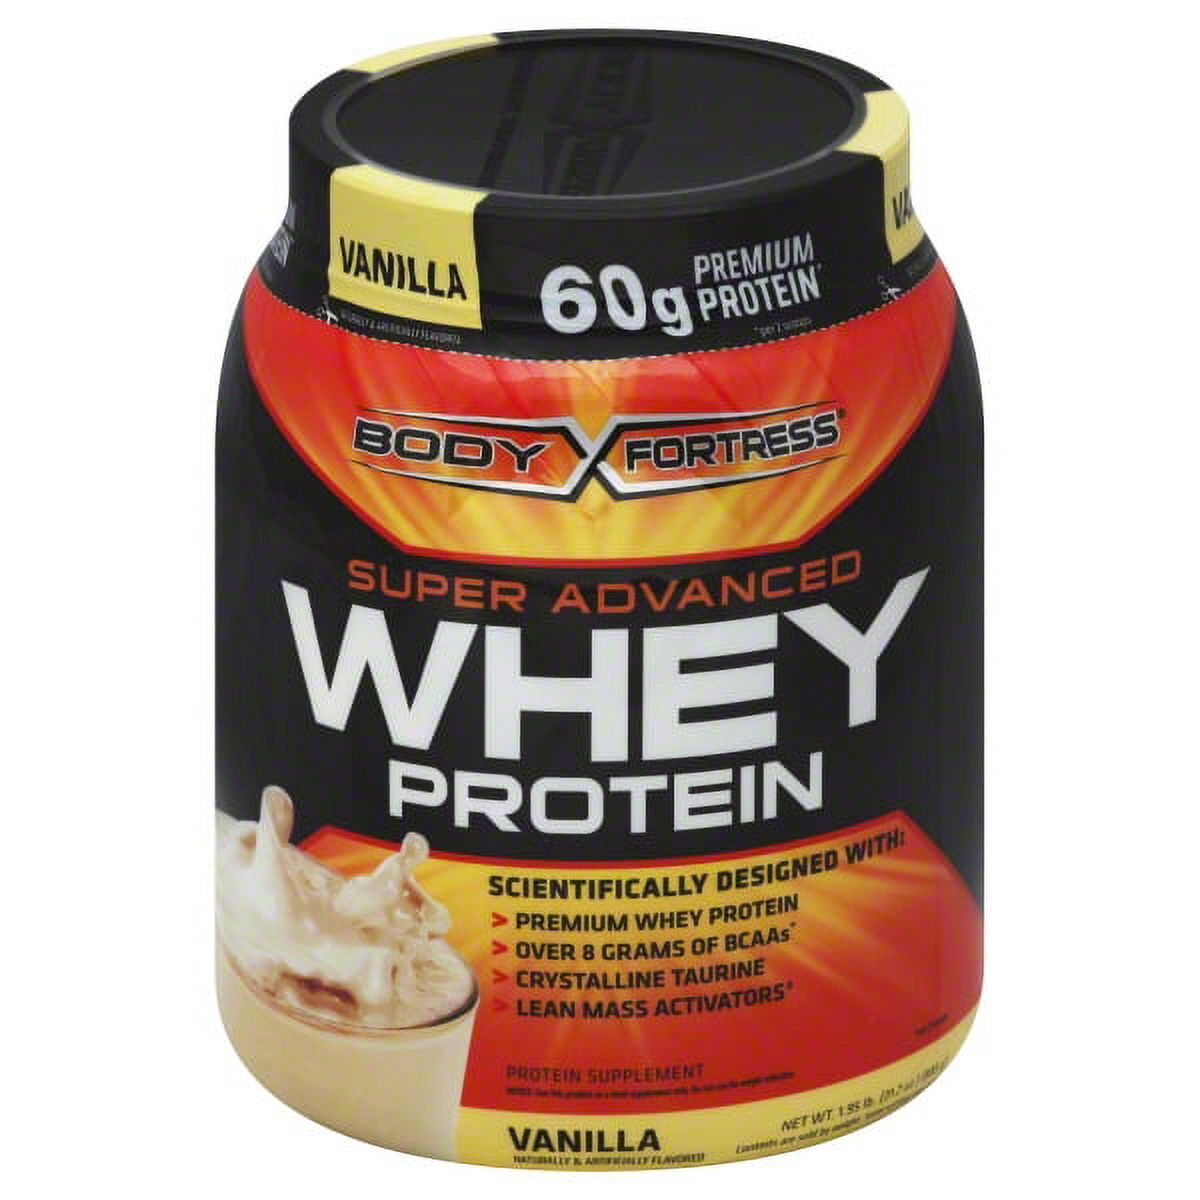 Body Fortress Super Advanced Whey Protein Powder Vanilla 1.95 LB - image 1 of 8